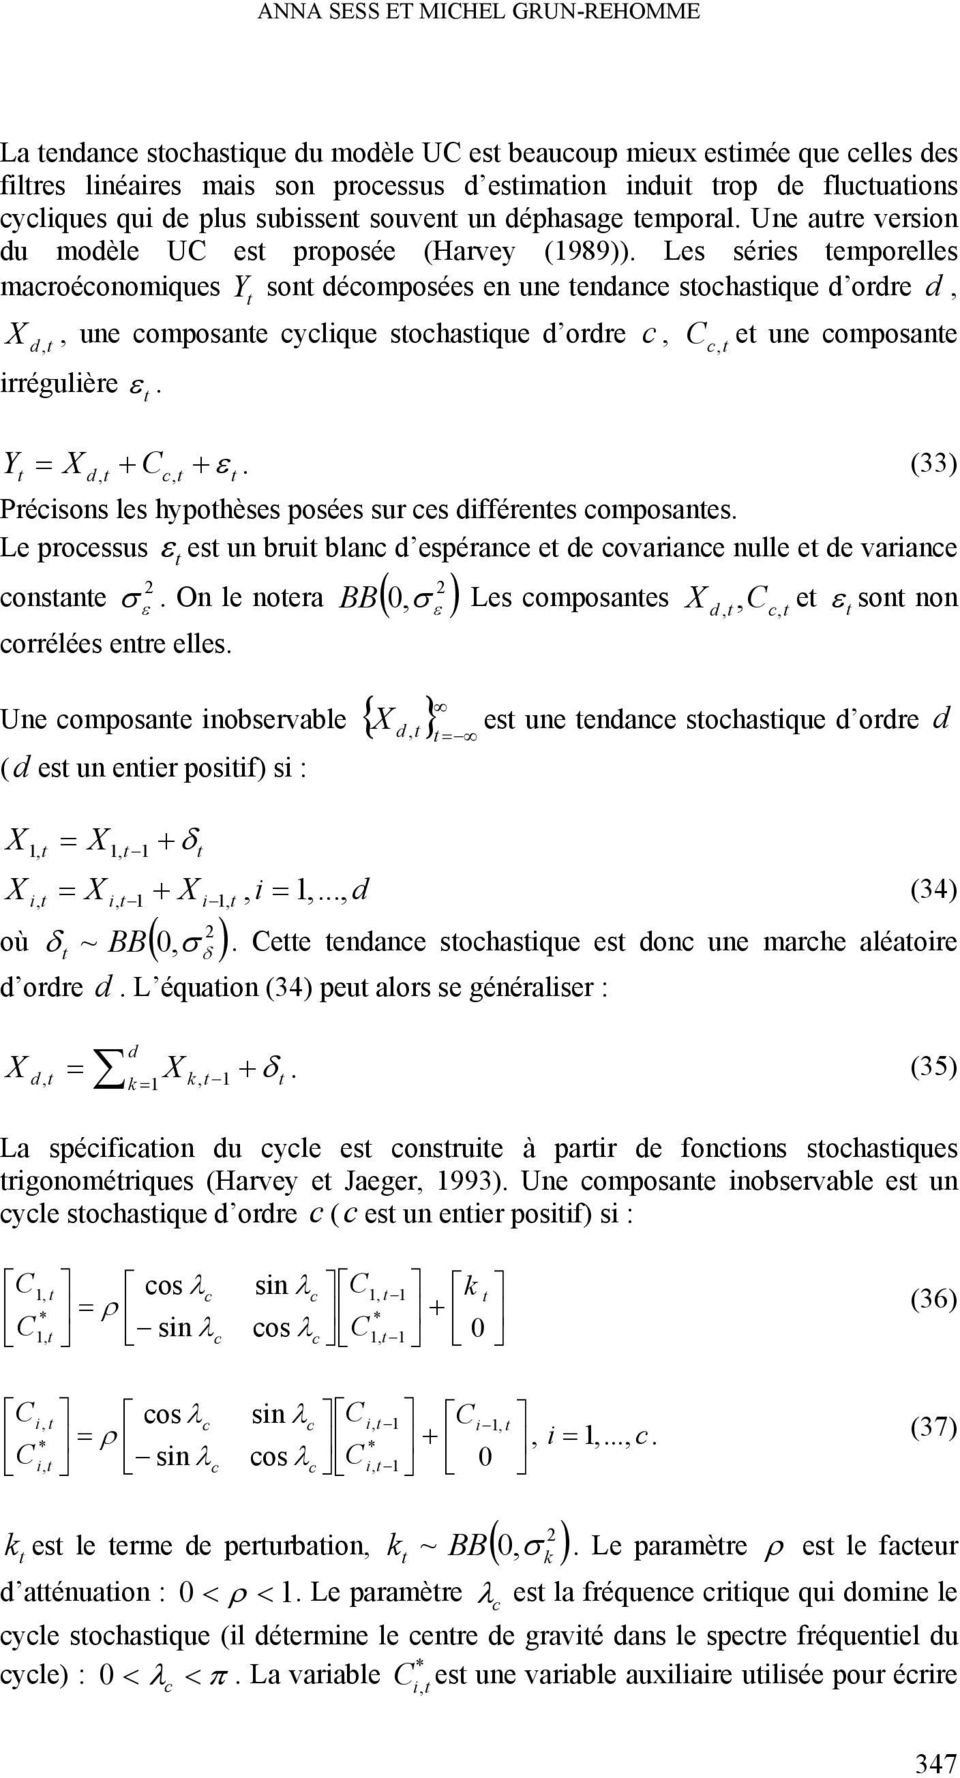 Les séries emporelles macroéconomiques Y son décomposées en une endance sochasique d ordre d, X d,, une composane cyclique sochasique d ordre c, c, e une composane irrégulière. Y X d, c,.